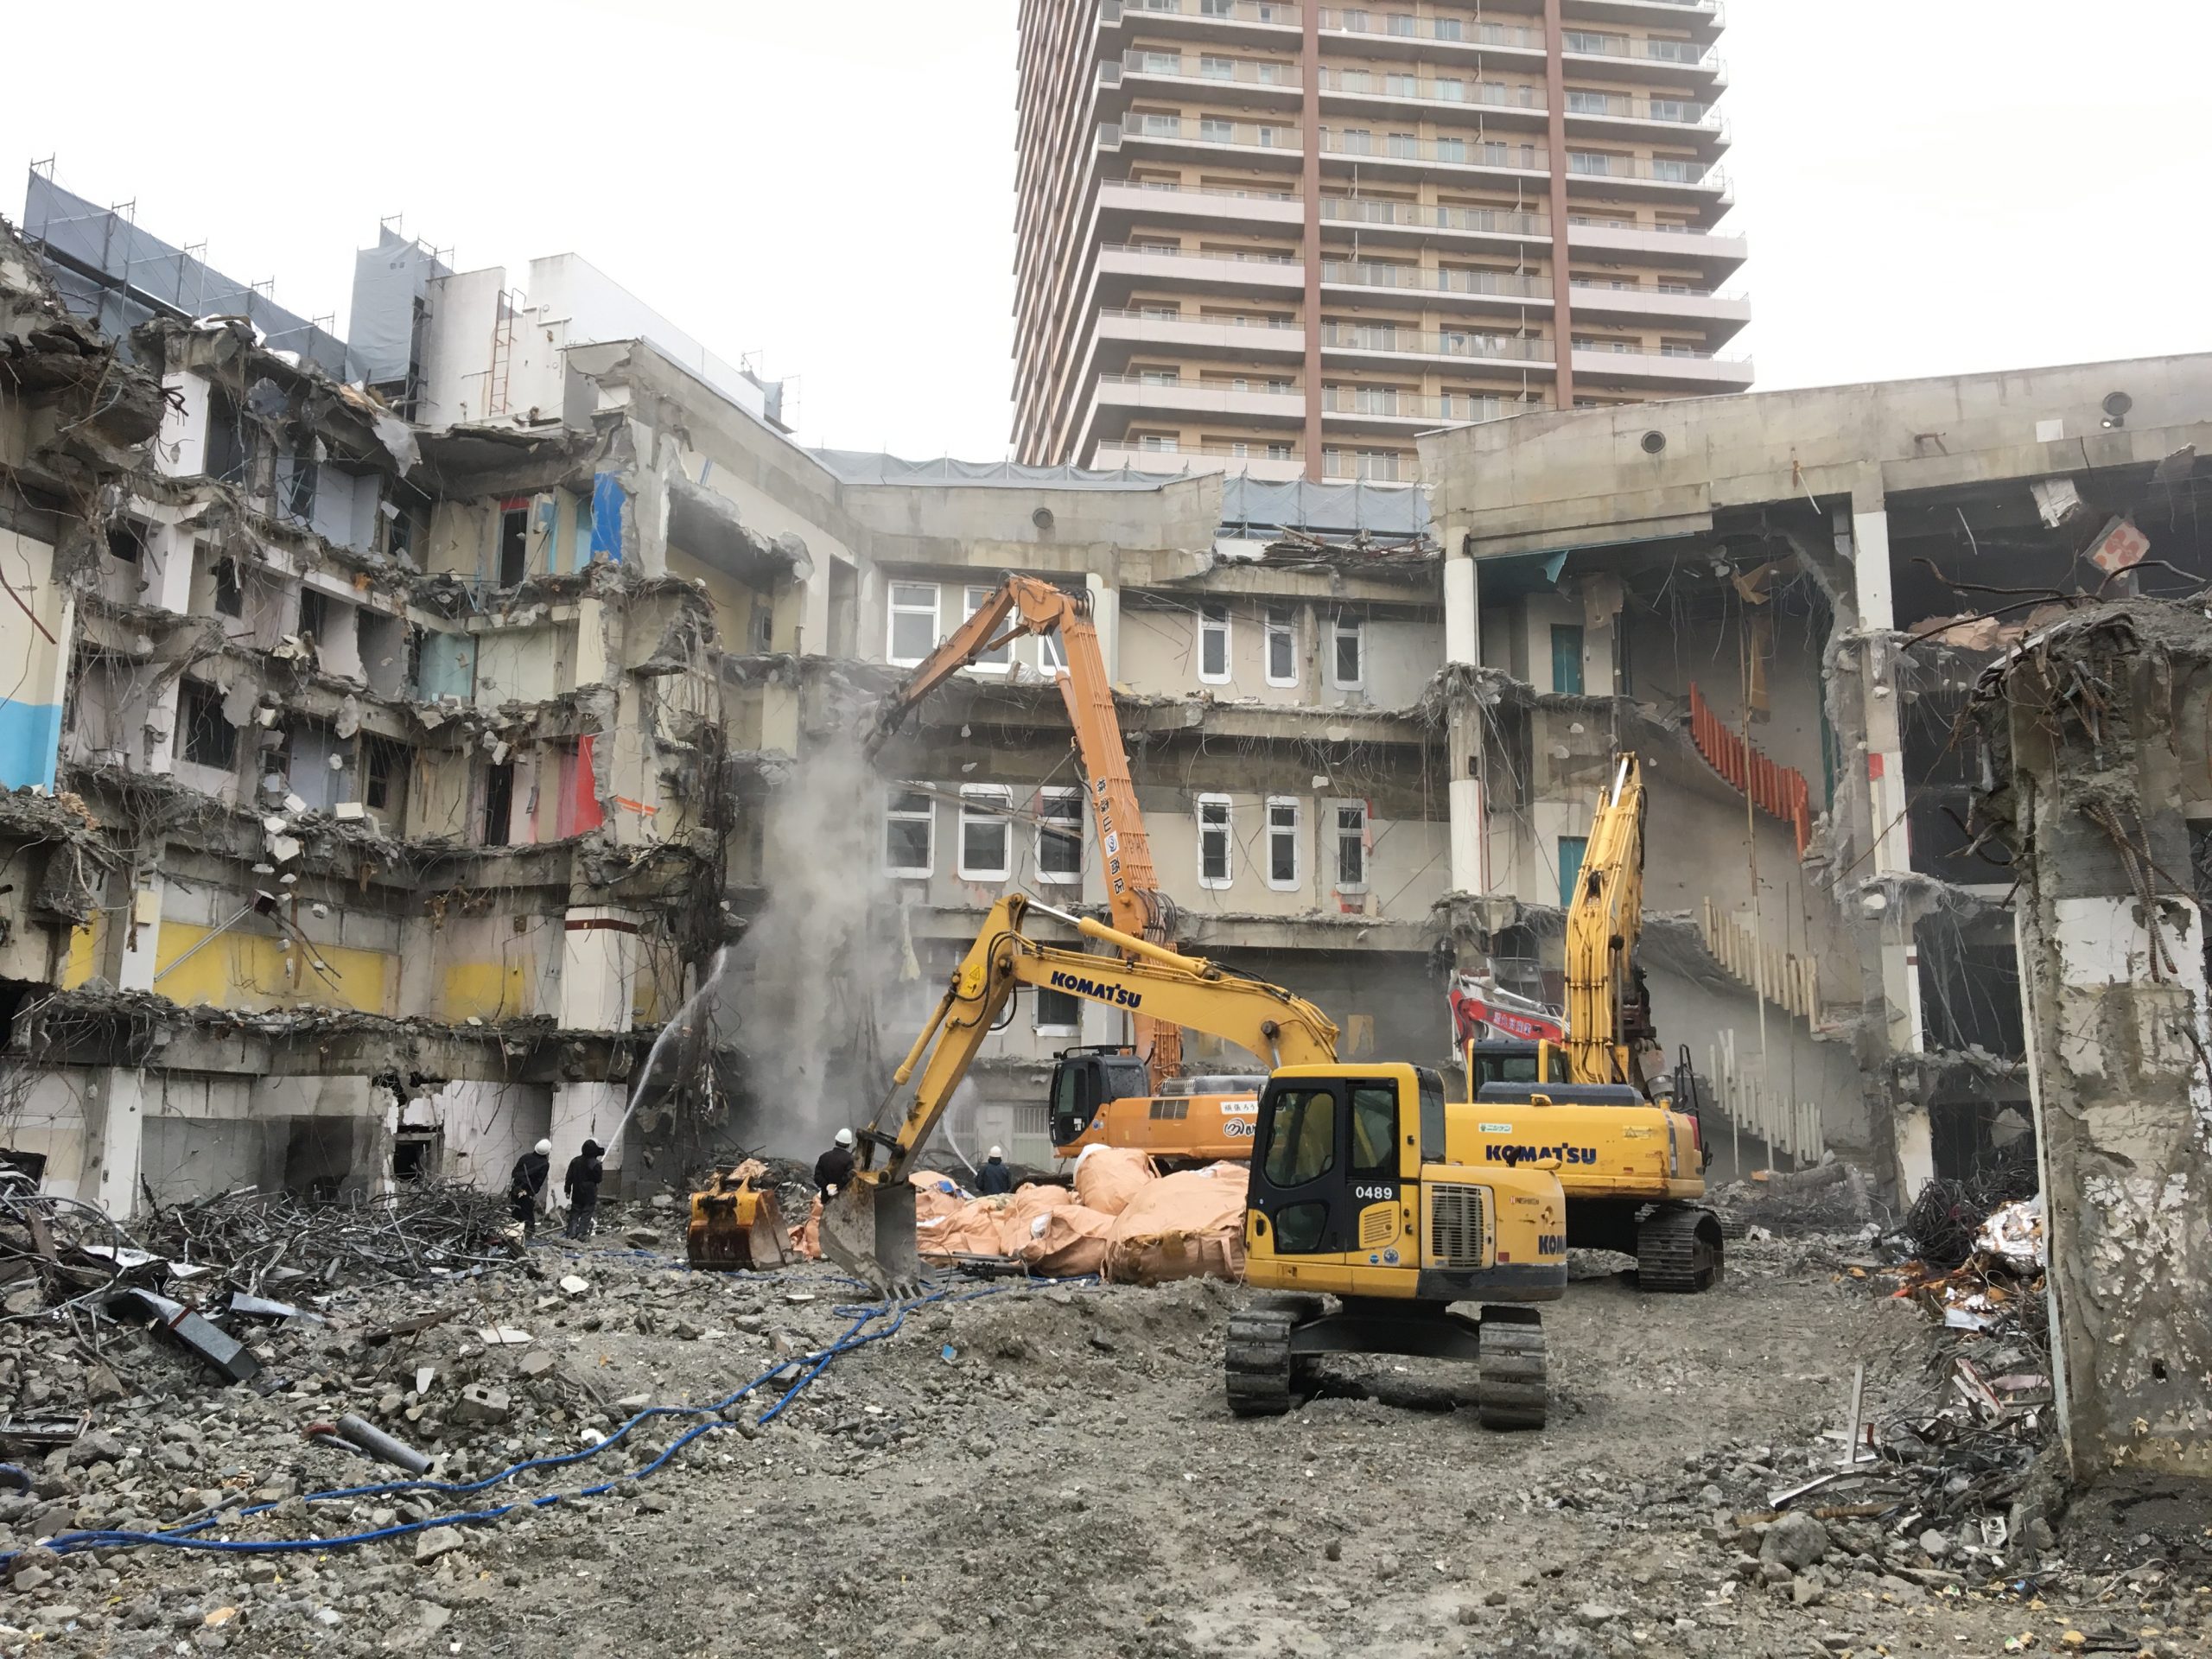 久留米市 地上6階 地下1階 S造大型商業施設解体工事 解体状況